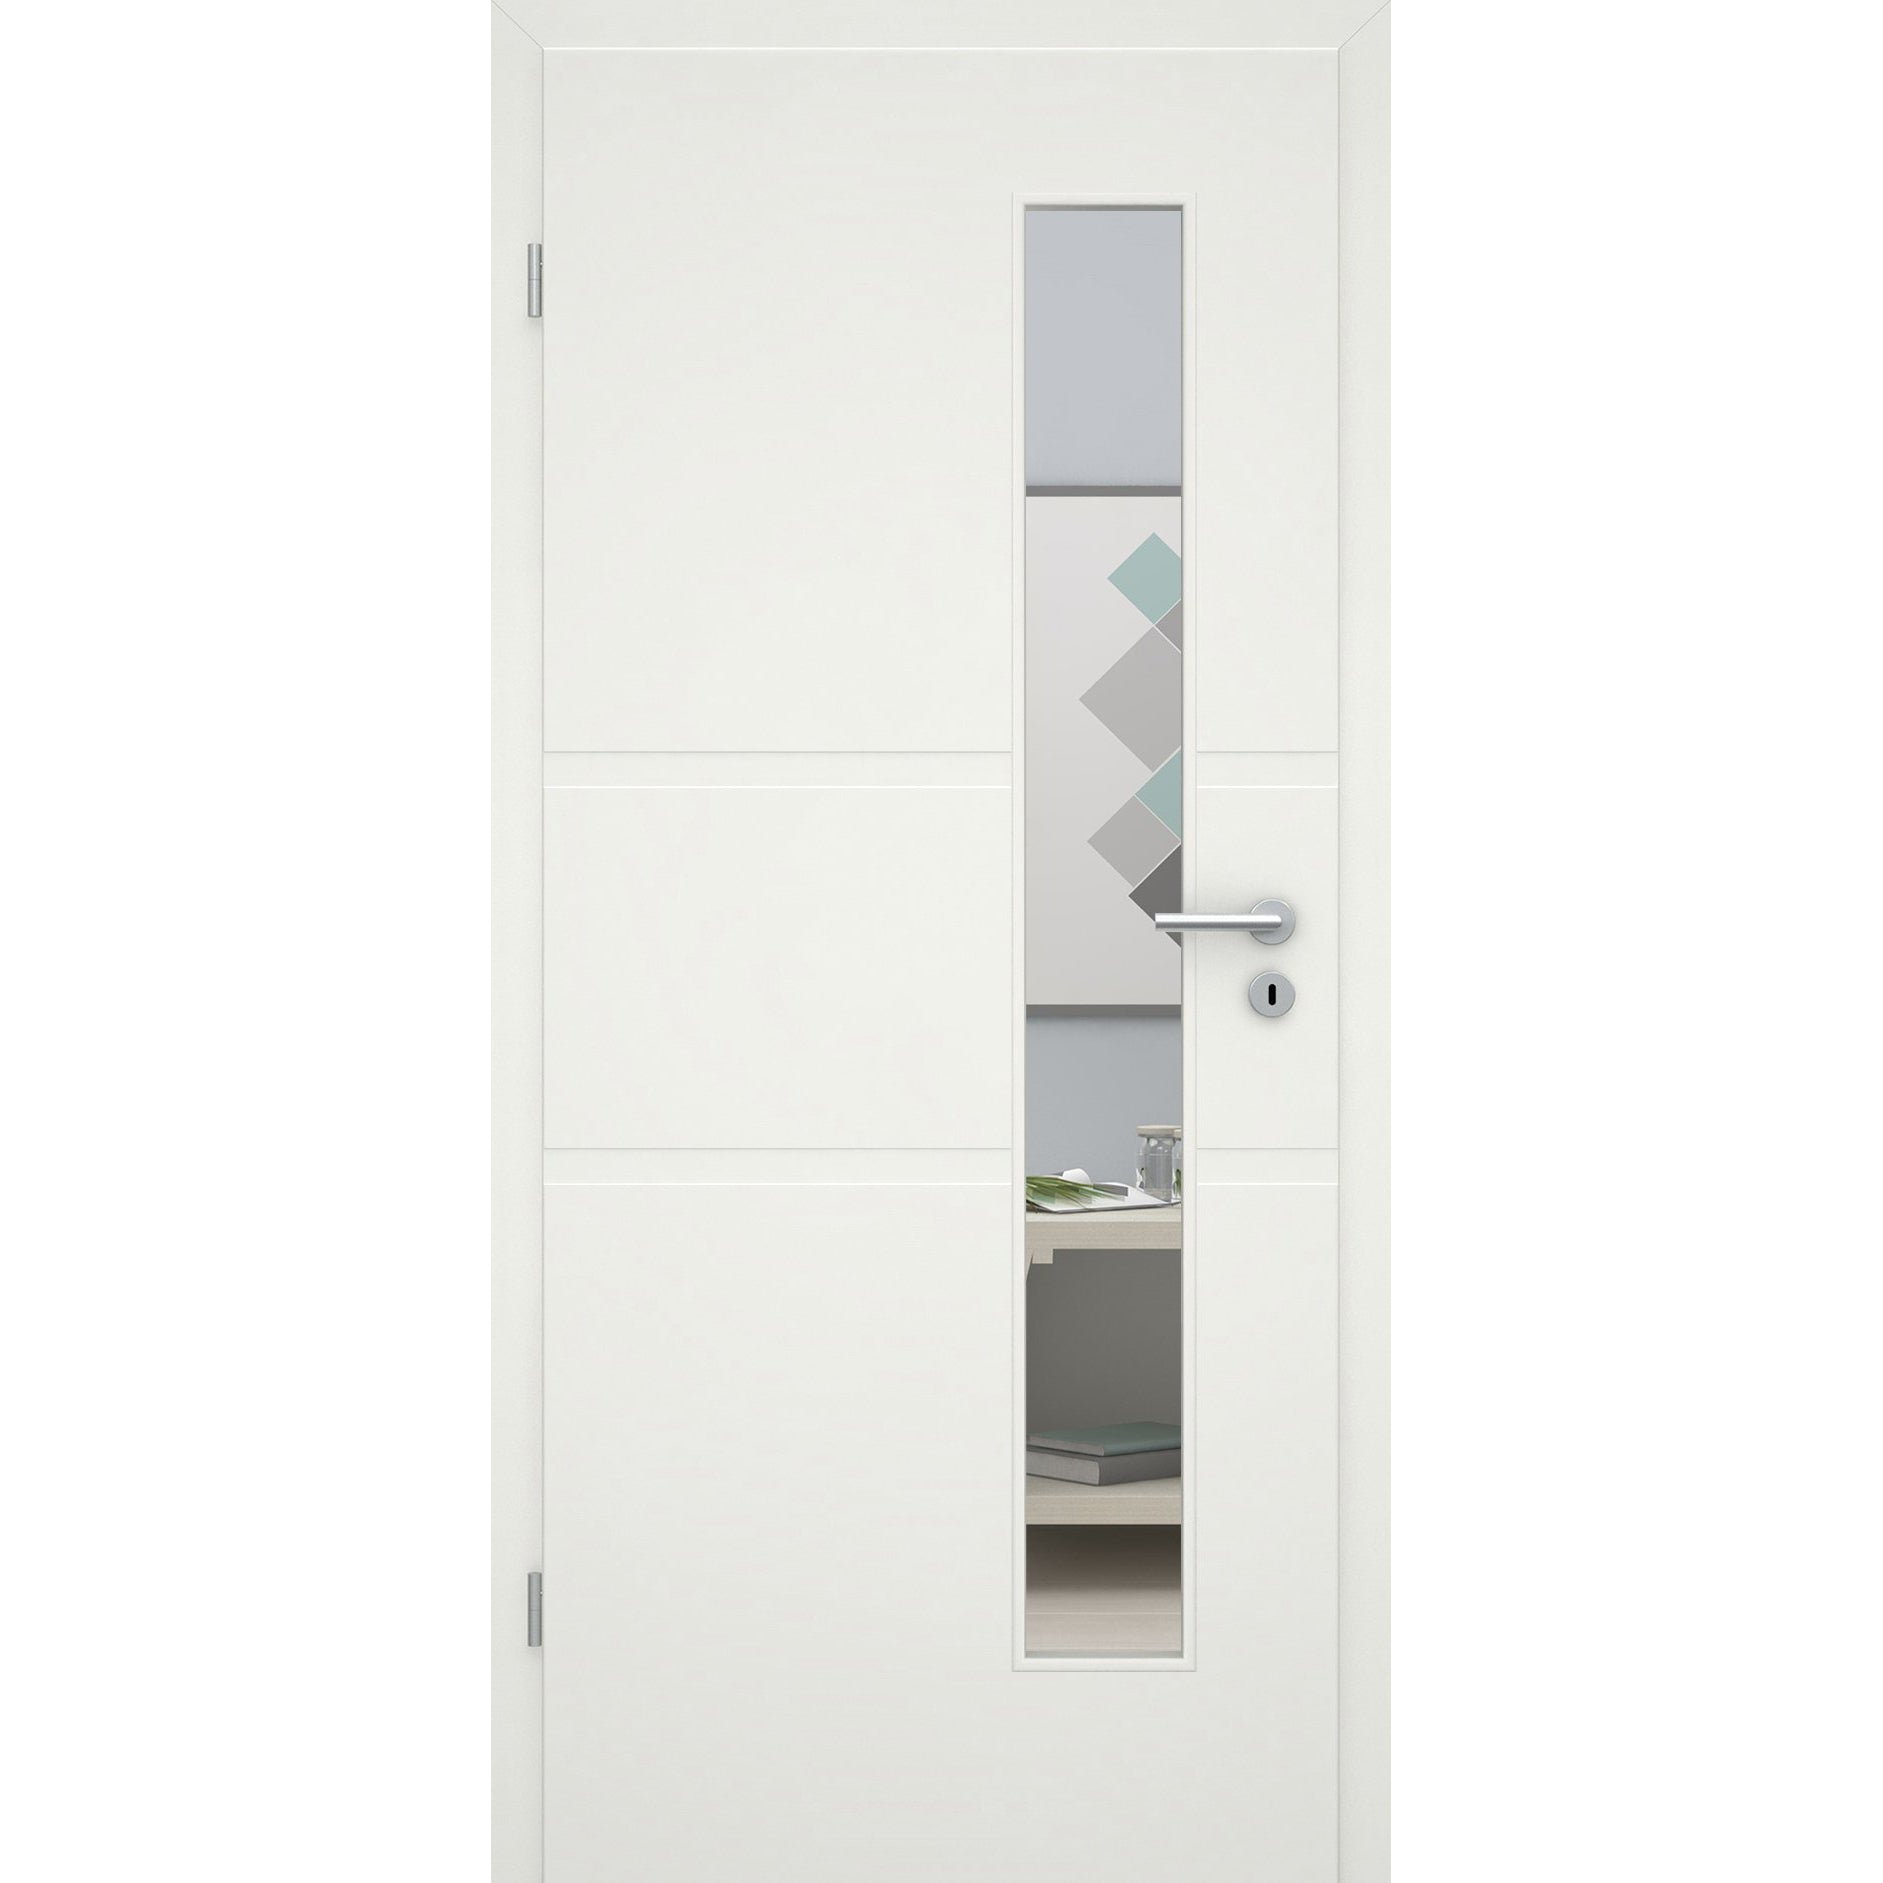 Zimmertür mit Lichtausschnitt soft-weiß 2 breite Rillen Eckkante - Modell Designtür QB21LAS